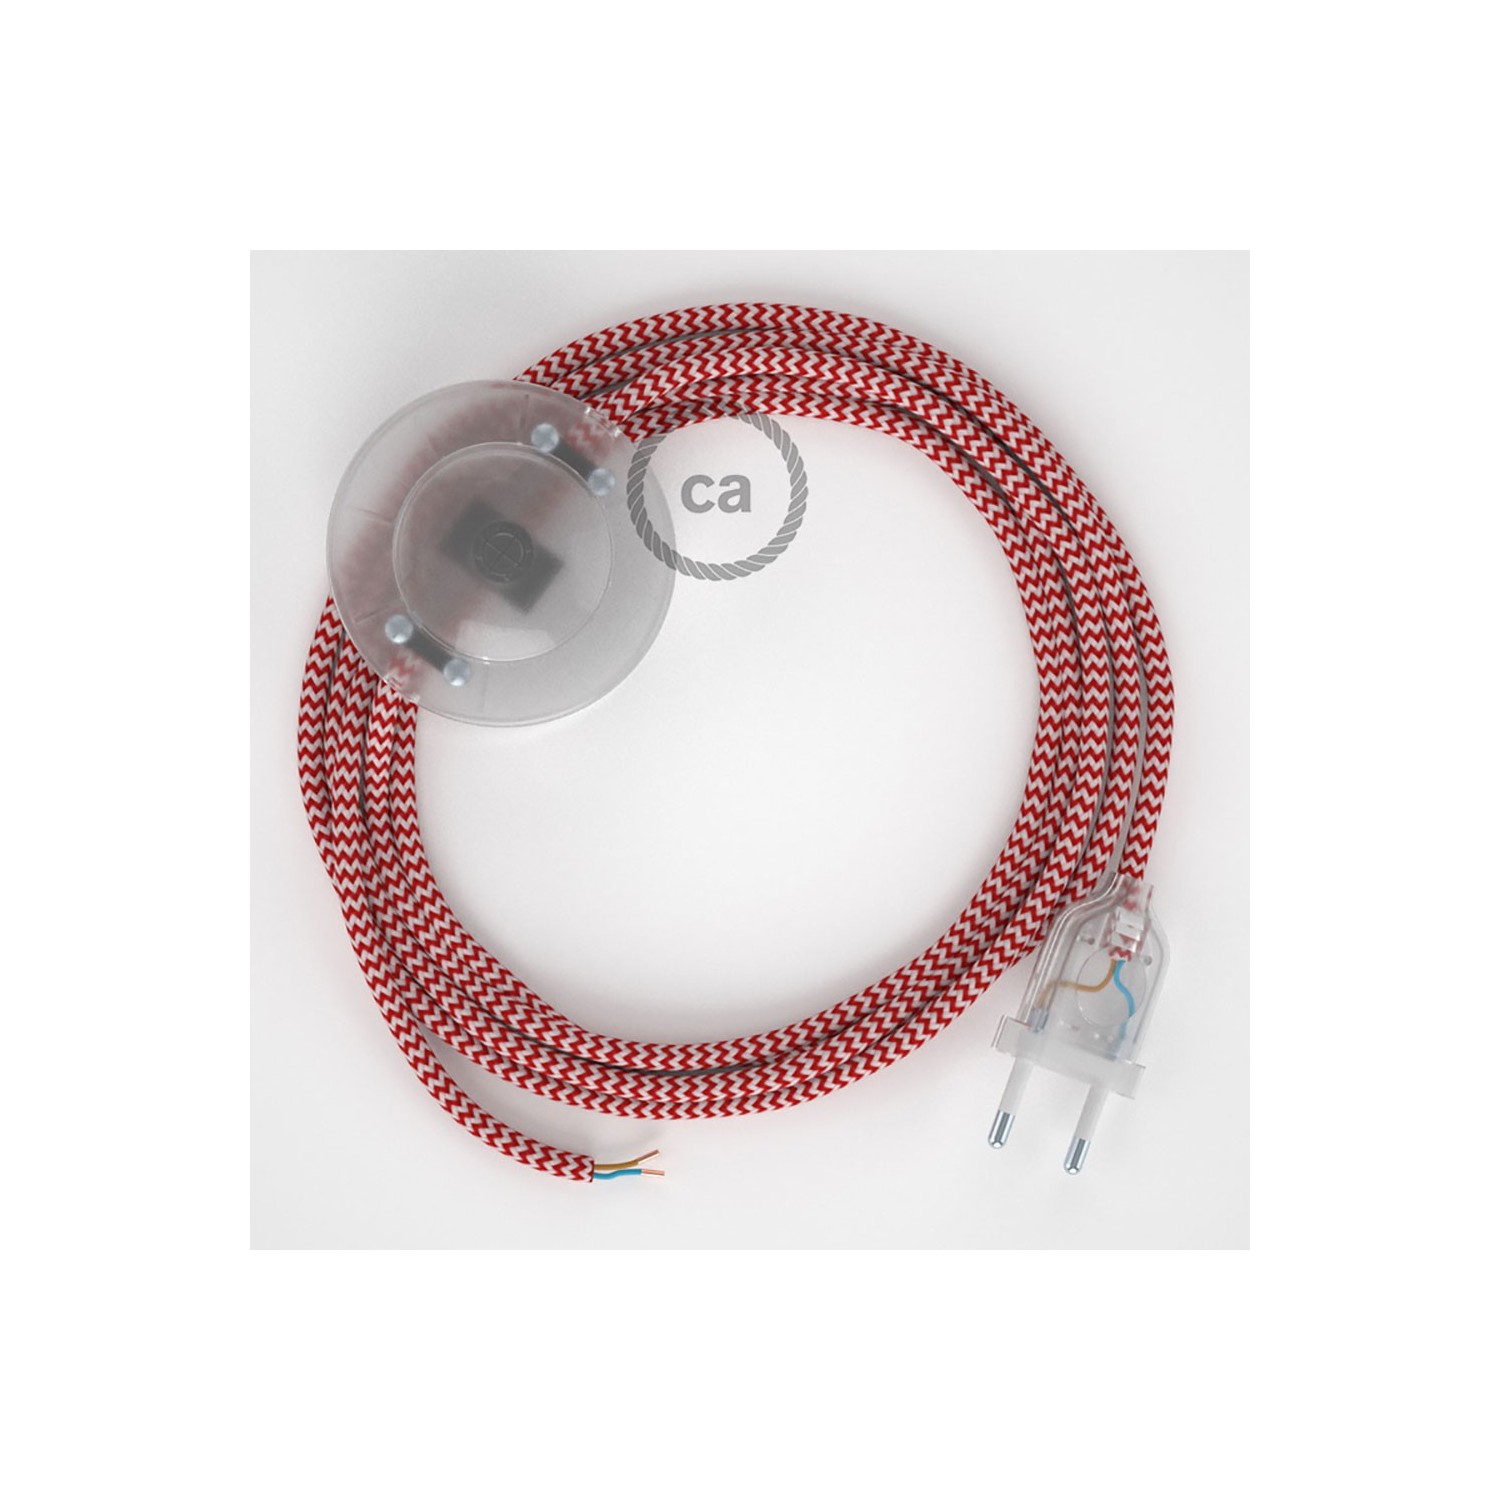 Υφασματινο Καλώδιο για Φωτιστικά Δαπέδου Zig Zag Άσπρο-Κόκκινο RZ09 - 3 m. Με διακόπτη ποδός και φις.